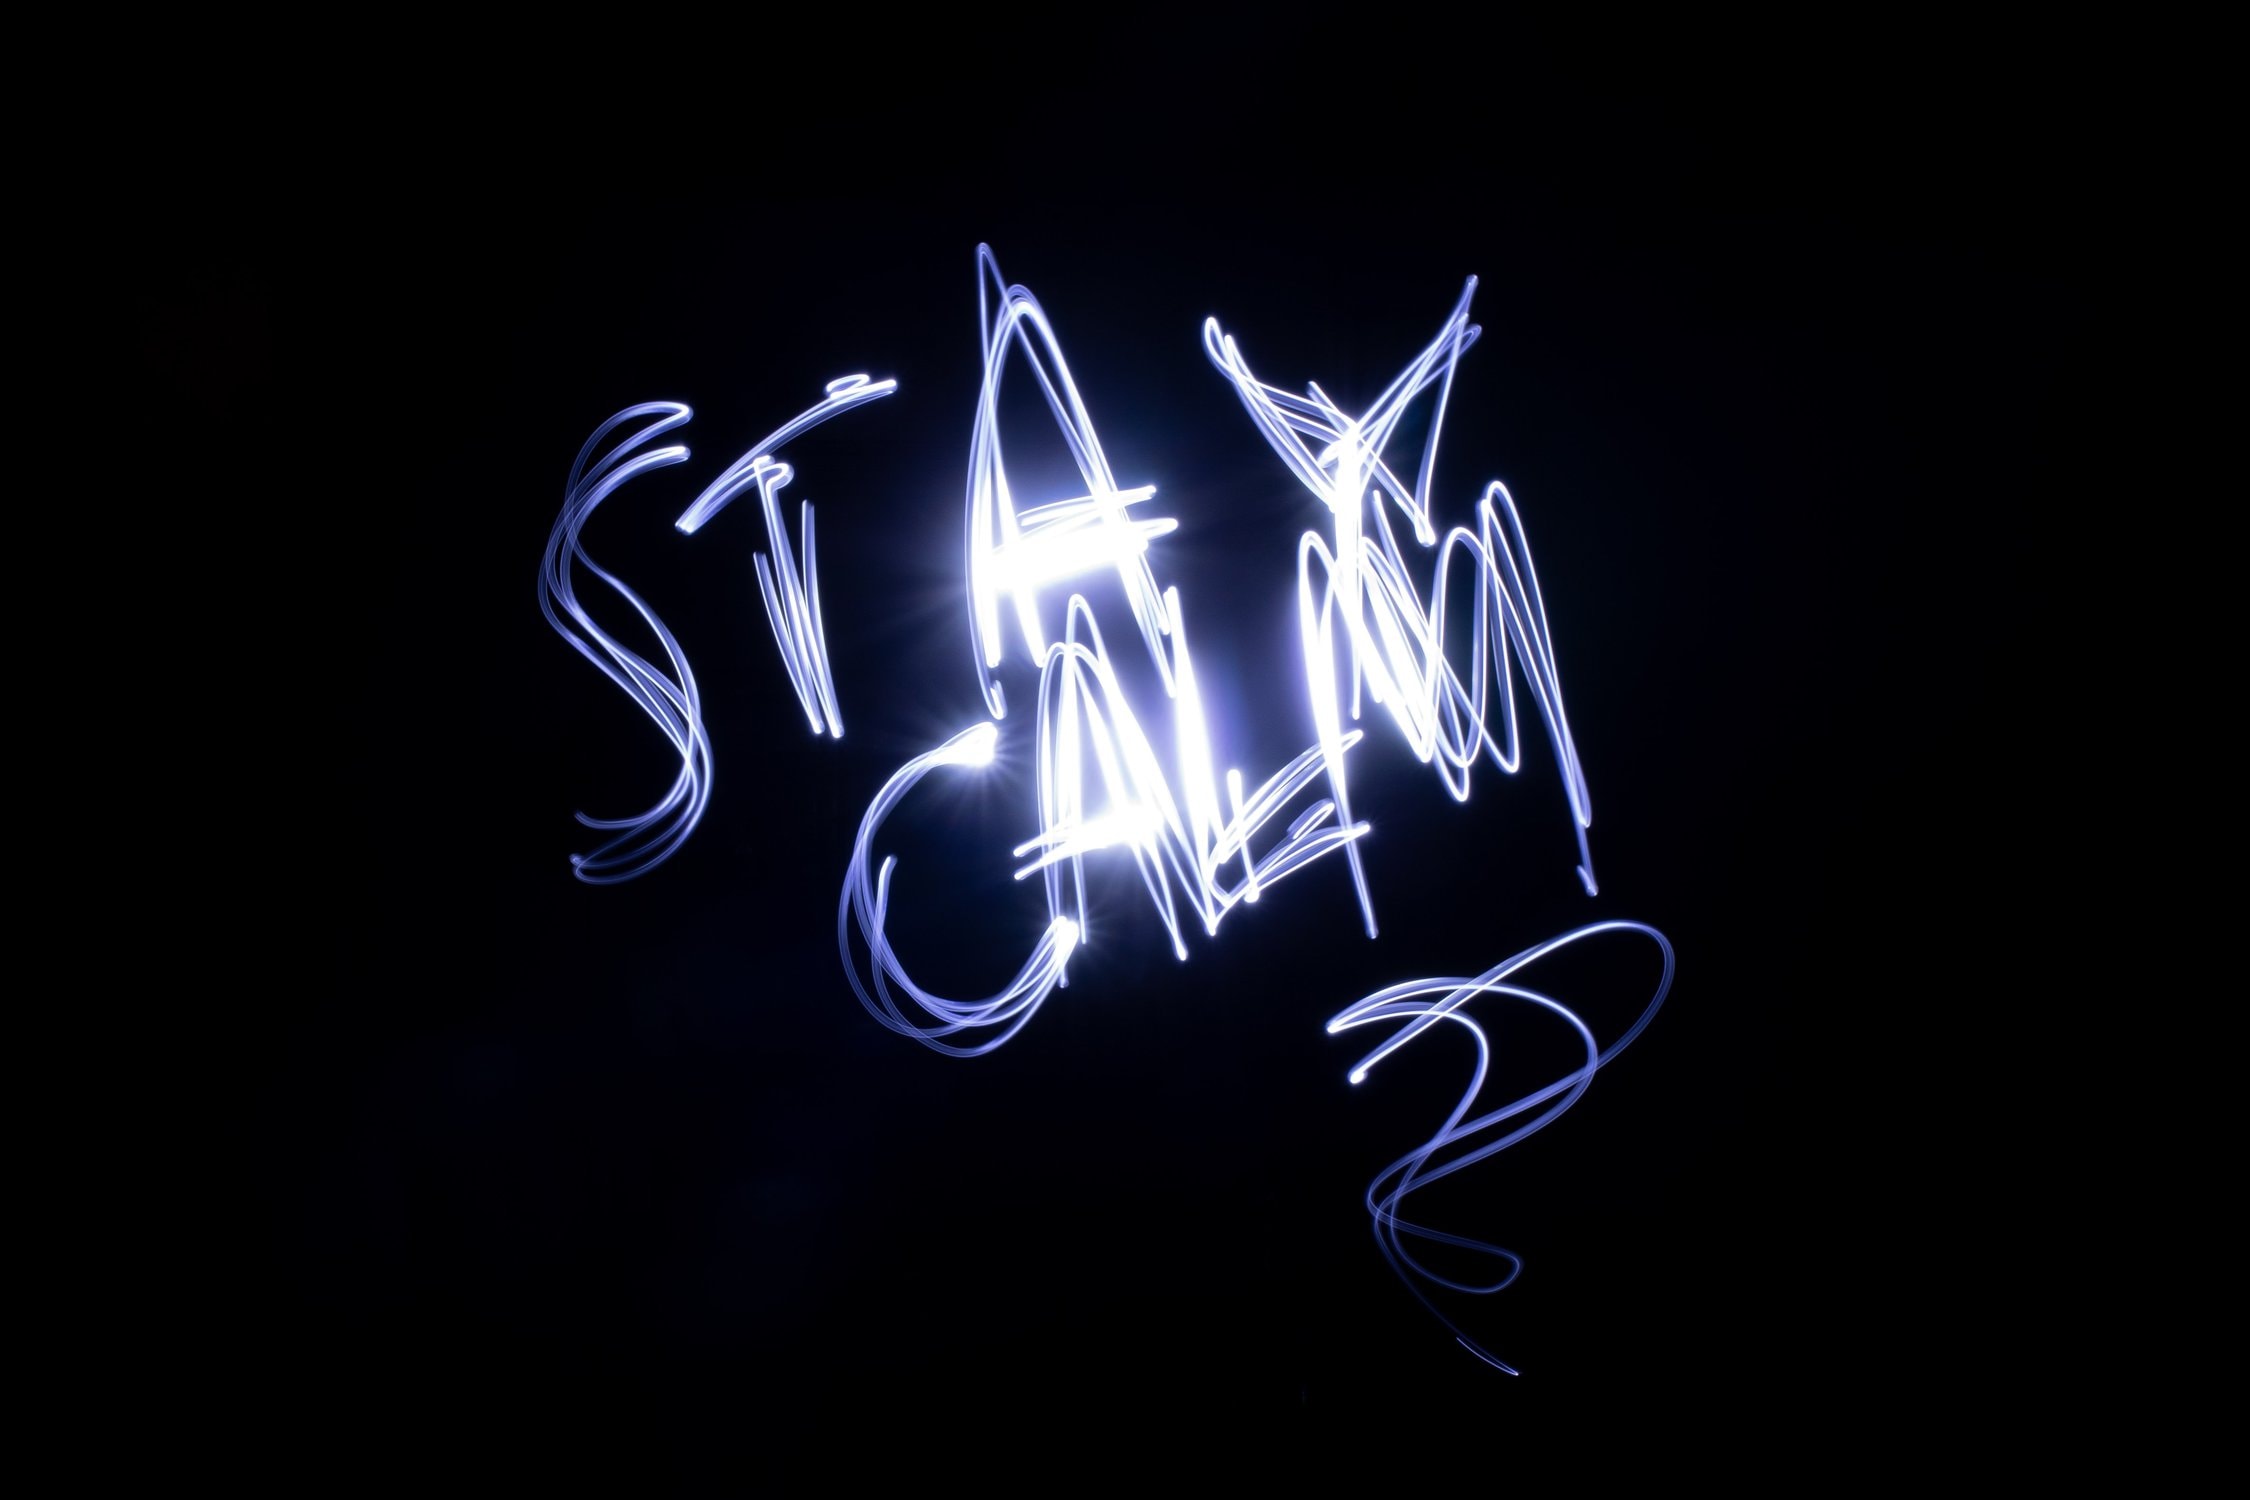 Leuchtende Schrift mit dem Text "Stay Calm" in der Dunkelheit